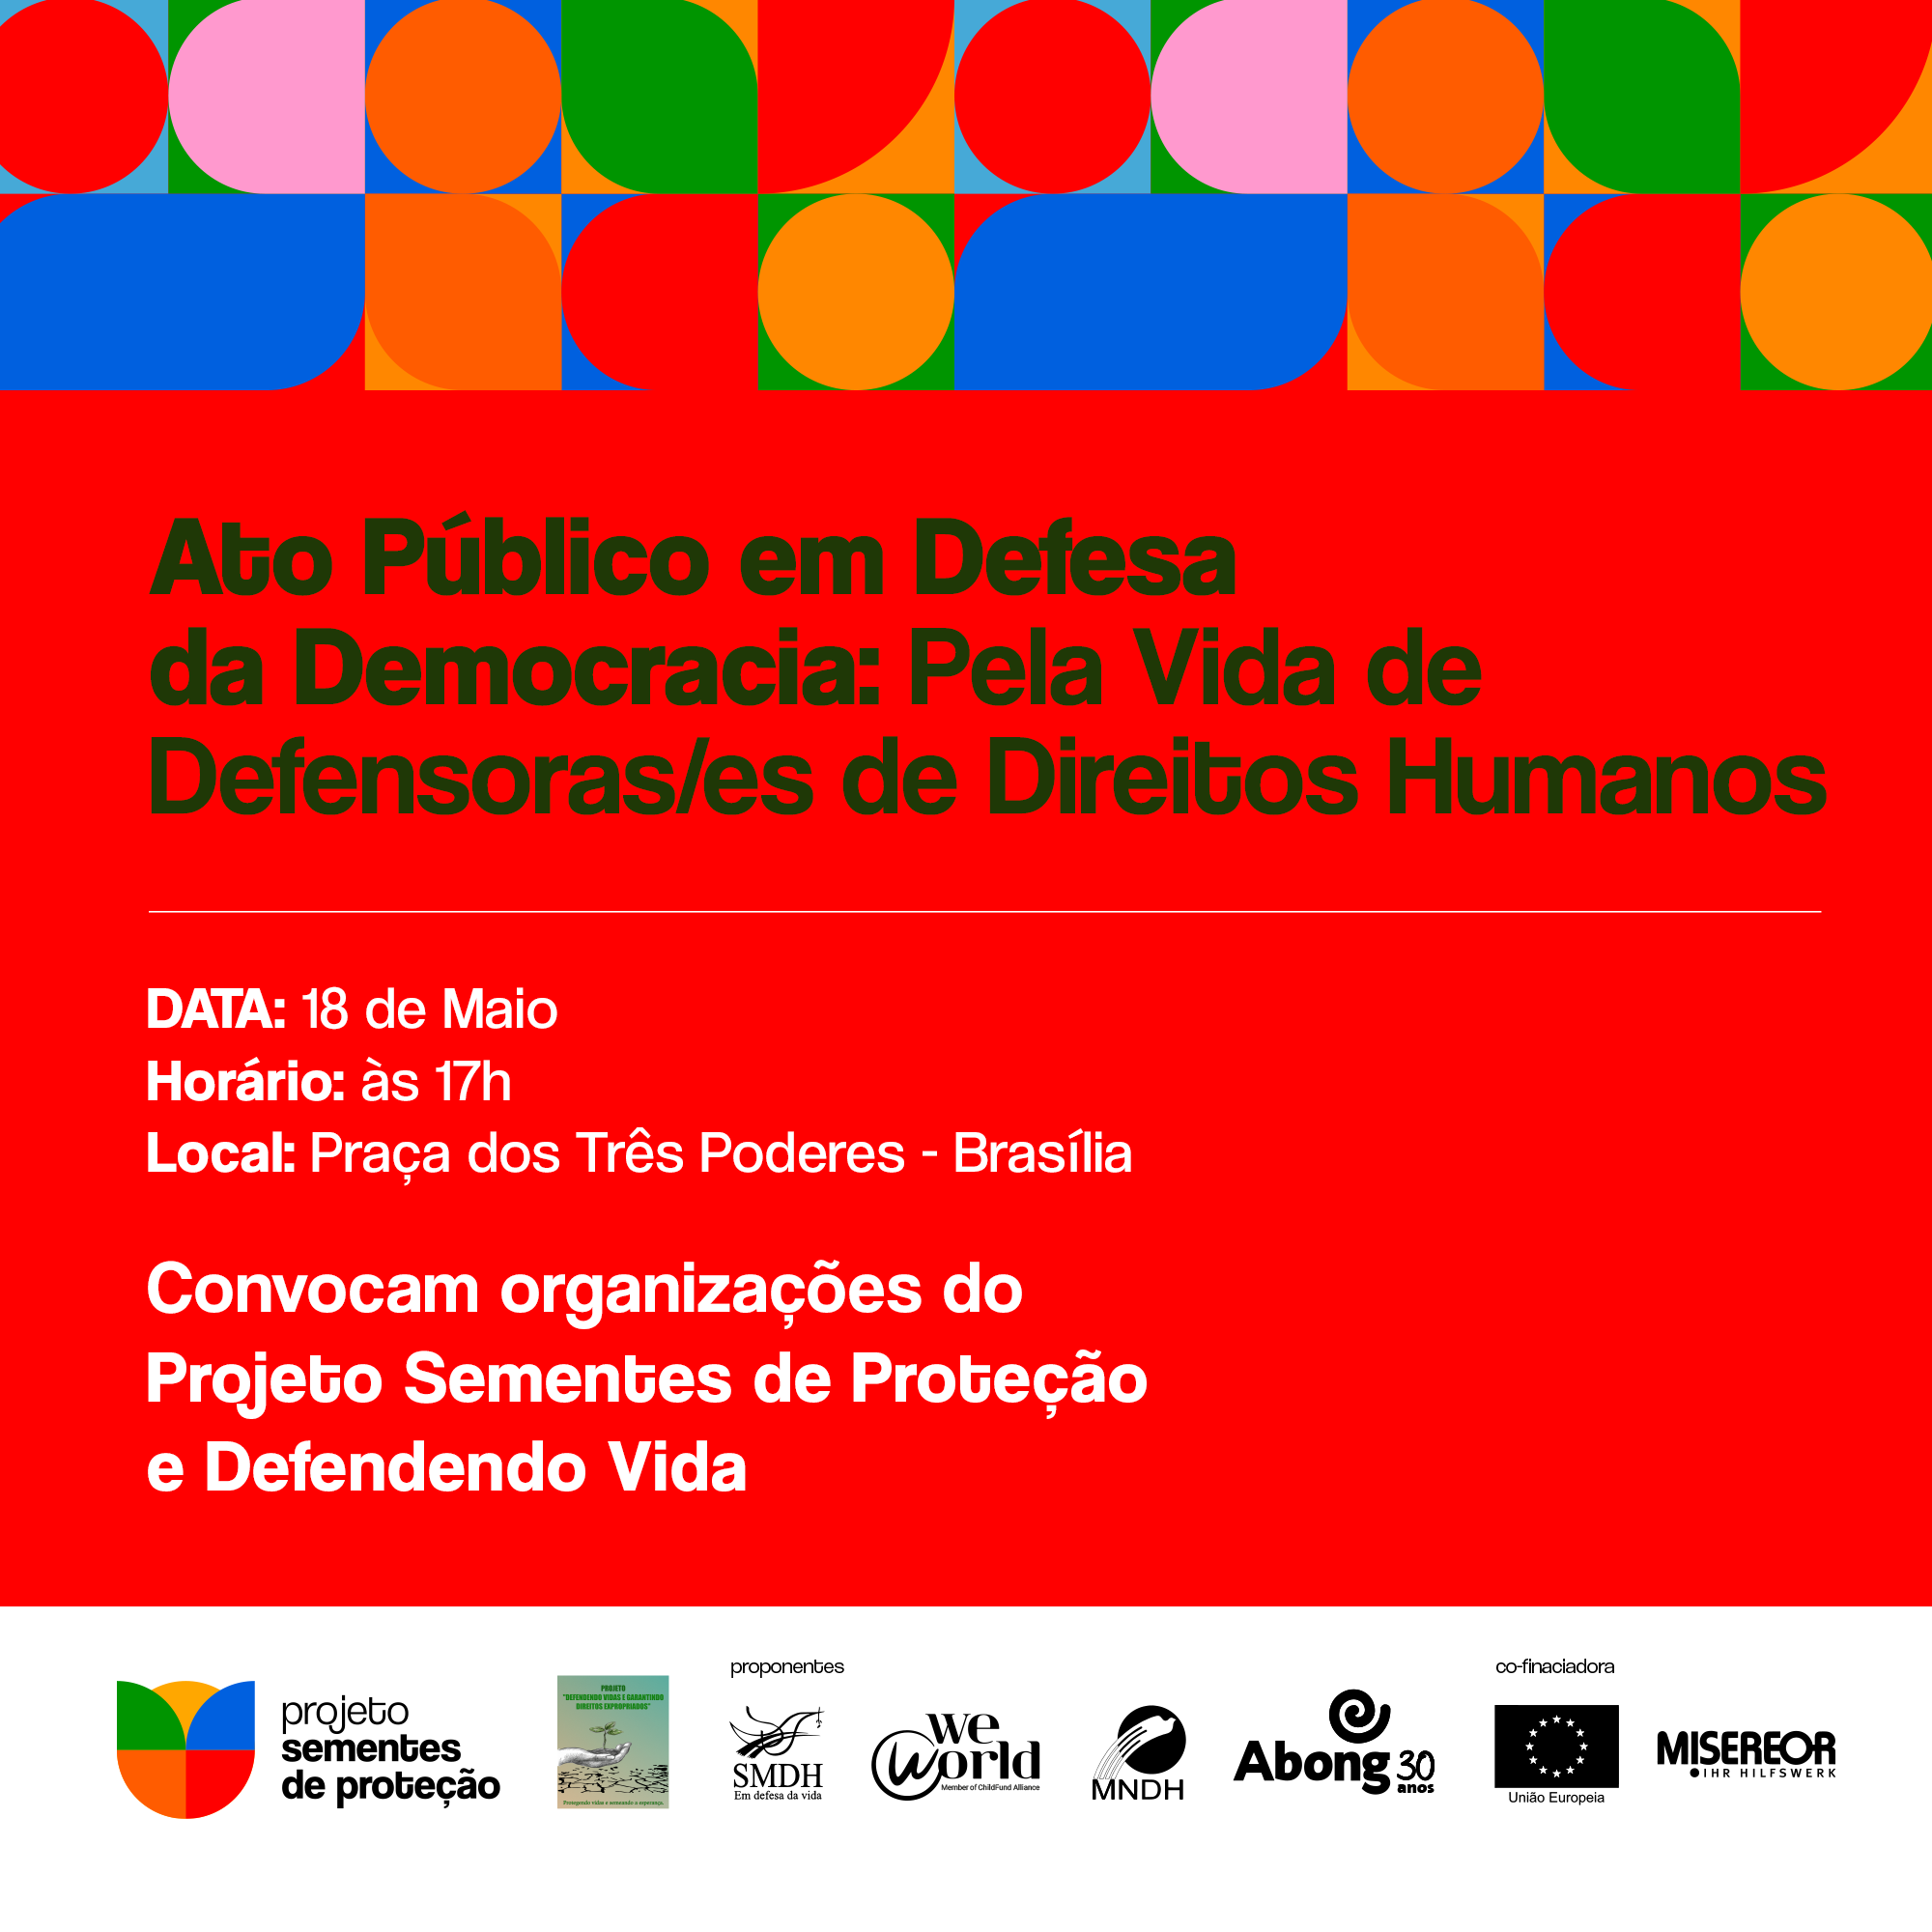 Ato Público em Defesa da Democracia: Pela Vida de Defensoras/es de Direitos Humanos